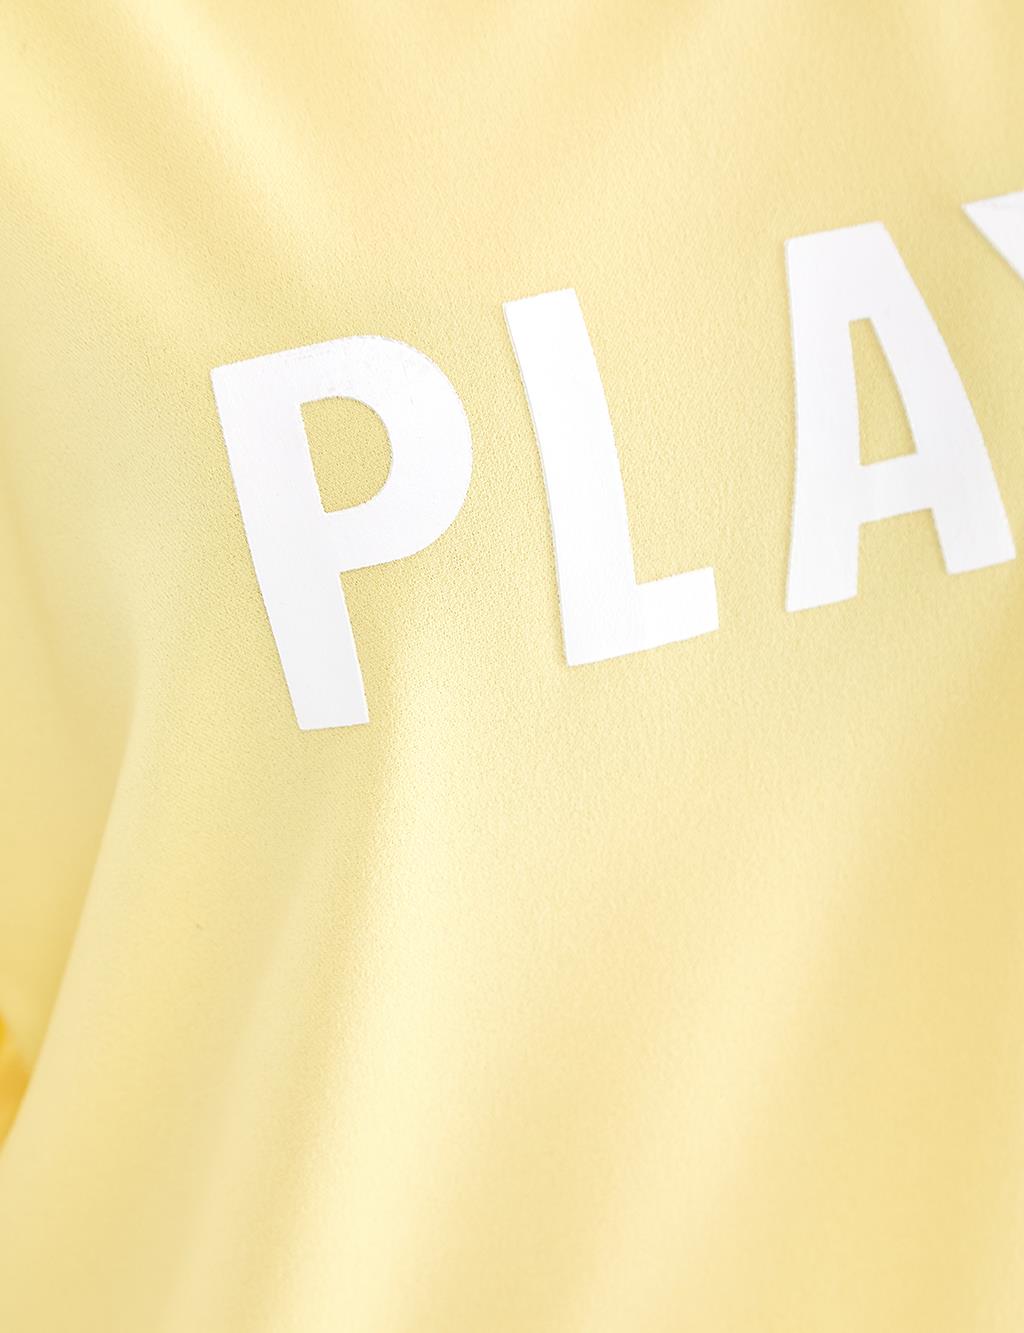 KYR Play Logolu Sweatshirt Sarı